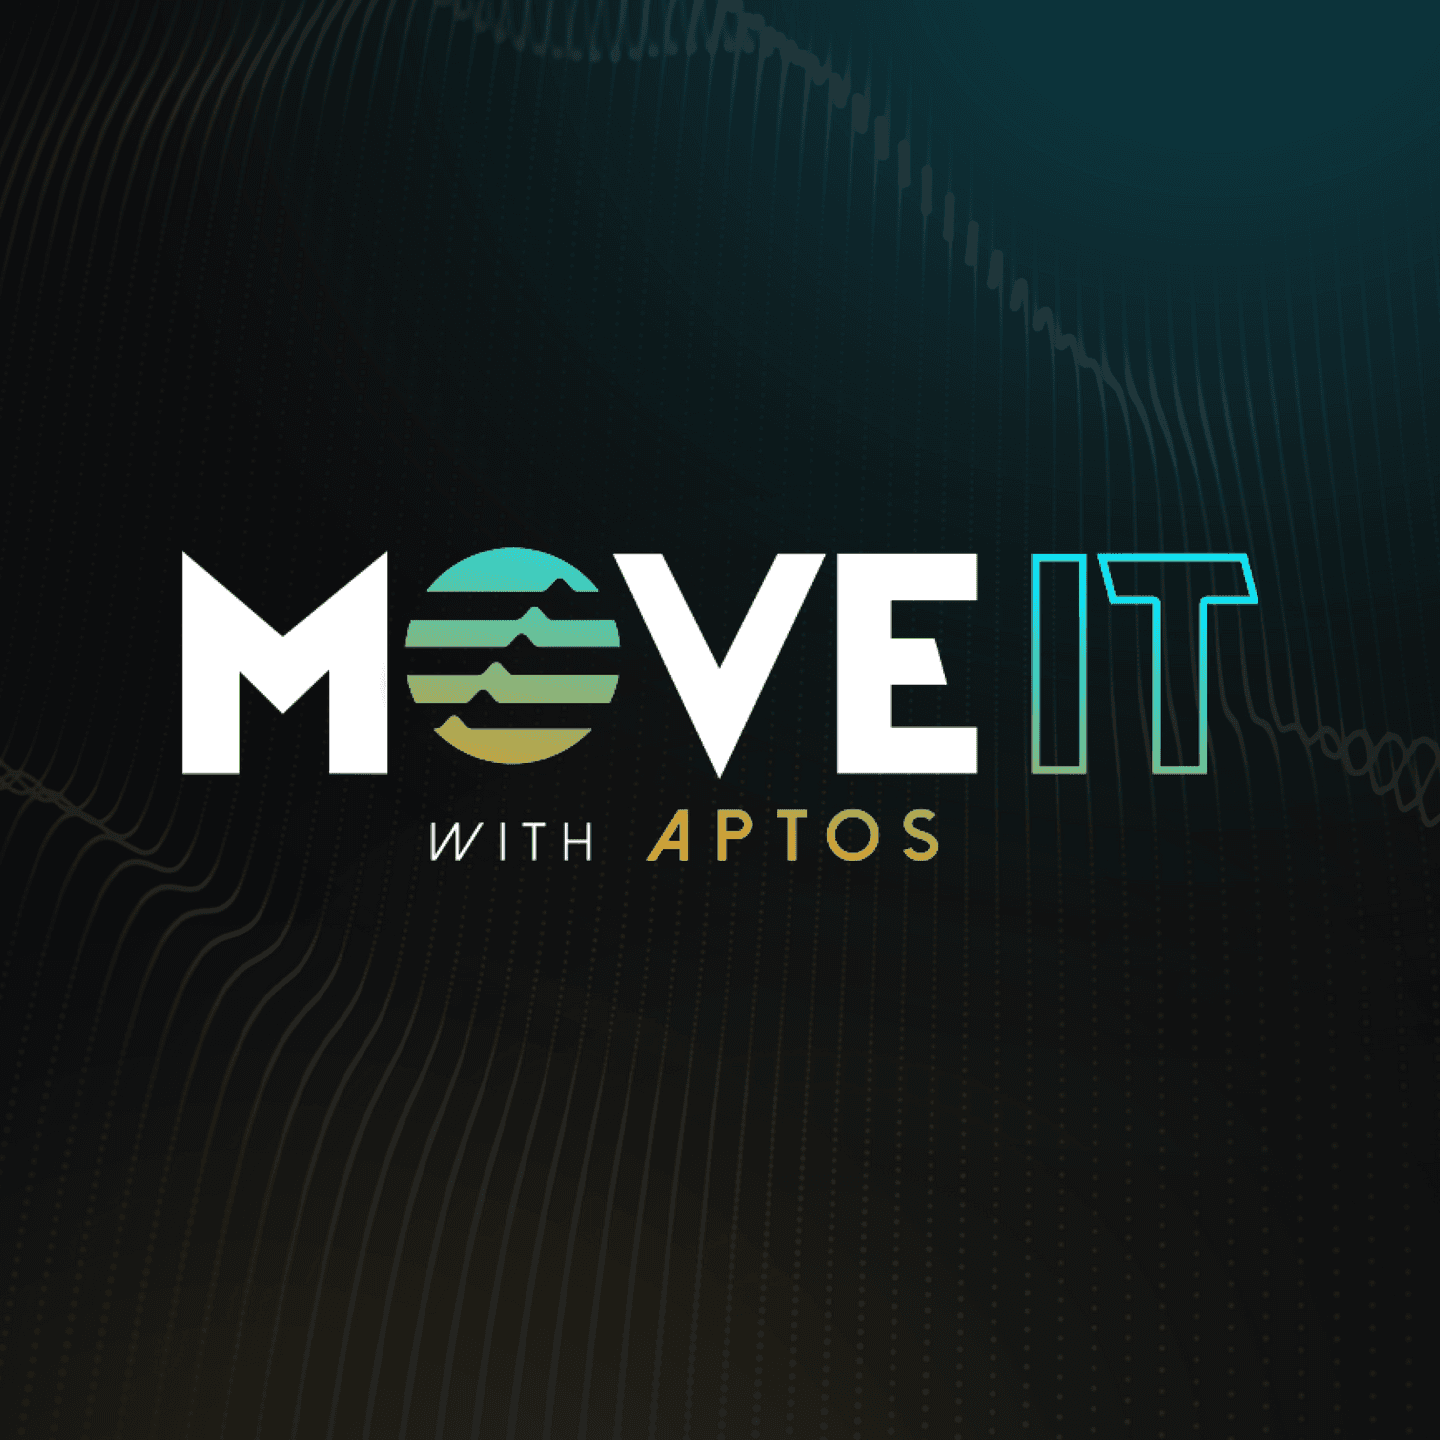 Move It with Aptos